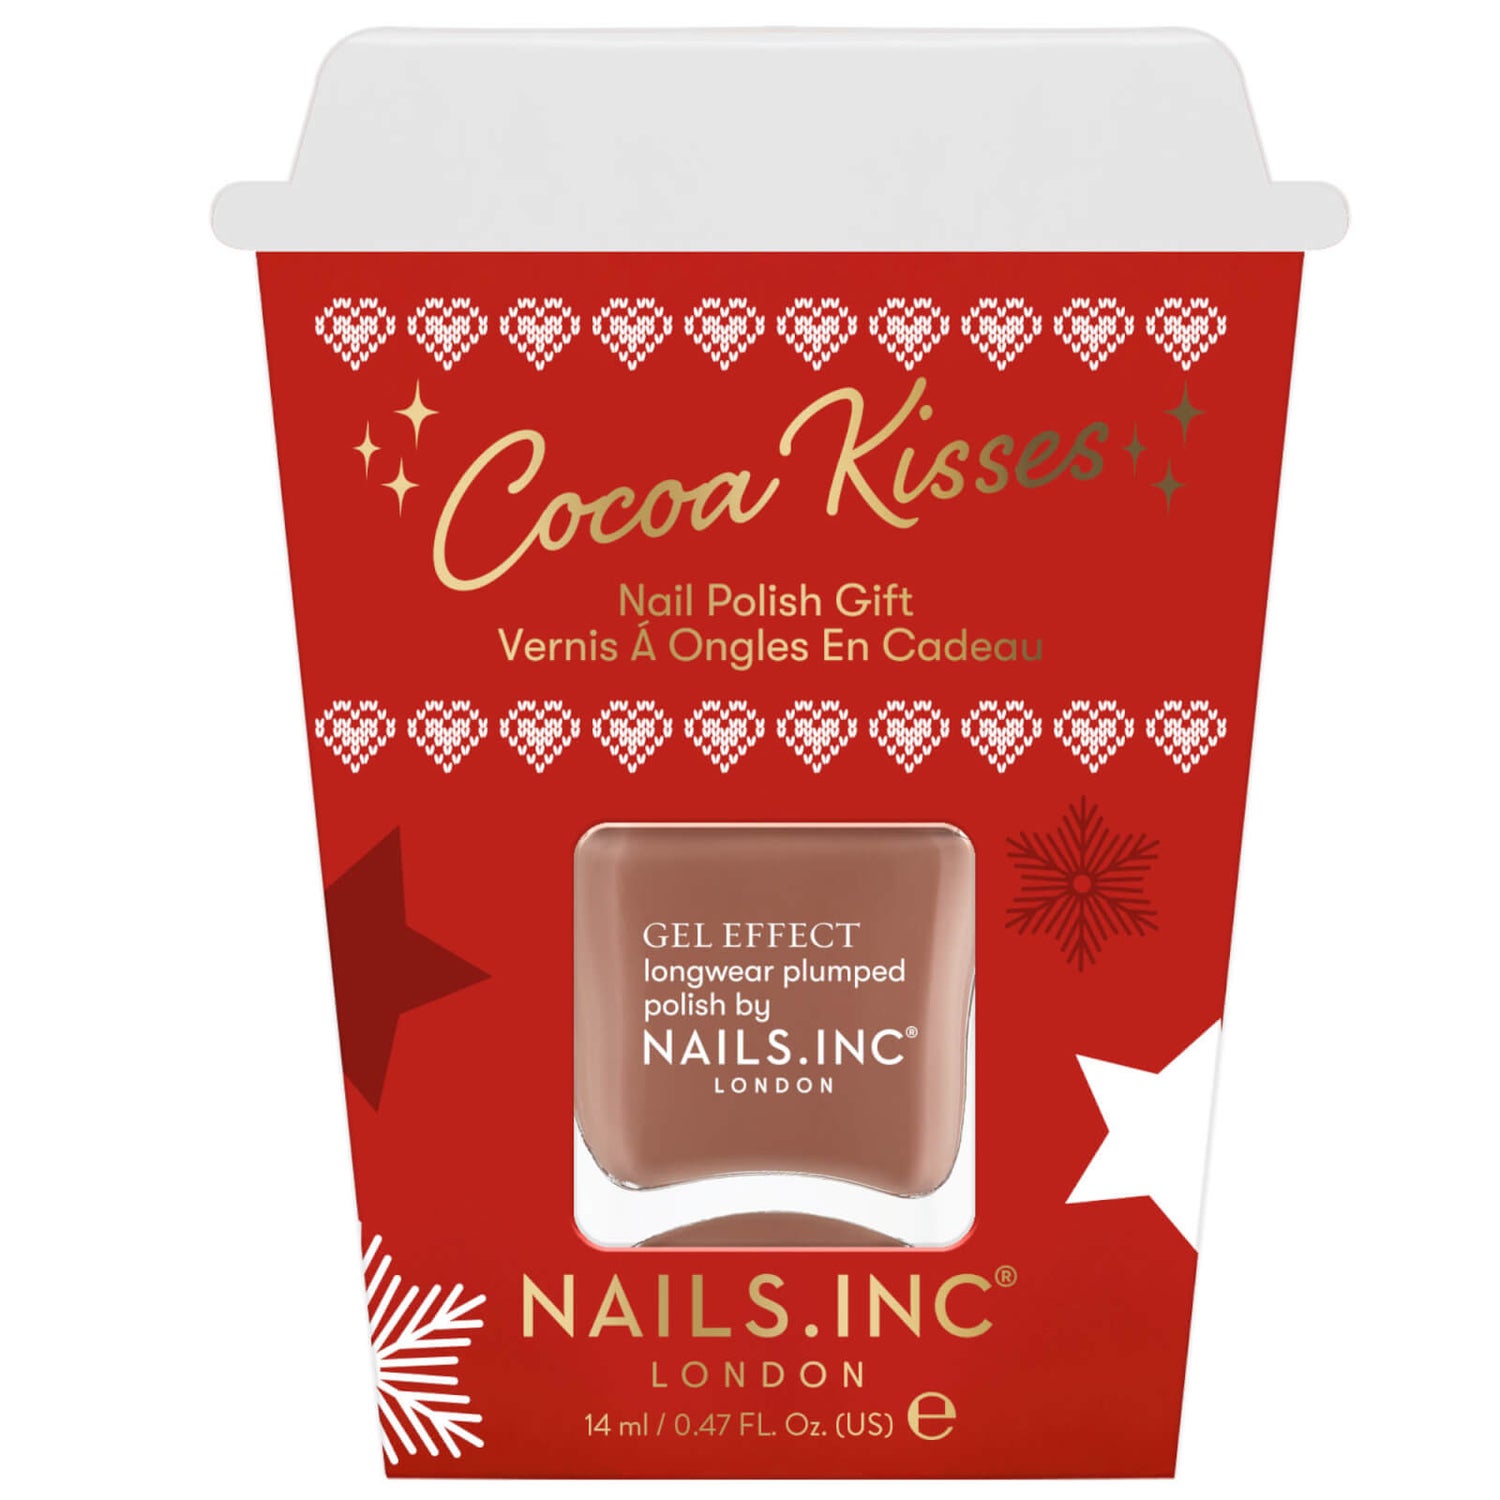 nails inc. Cocoa Kisses Nail Polish Gift Set (Worth £15.00)